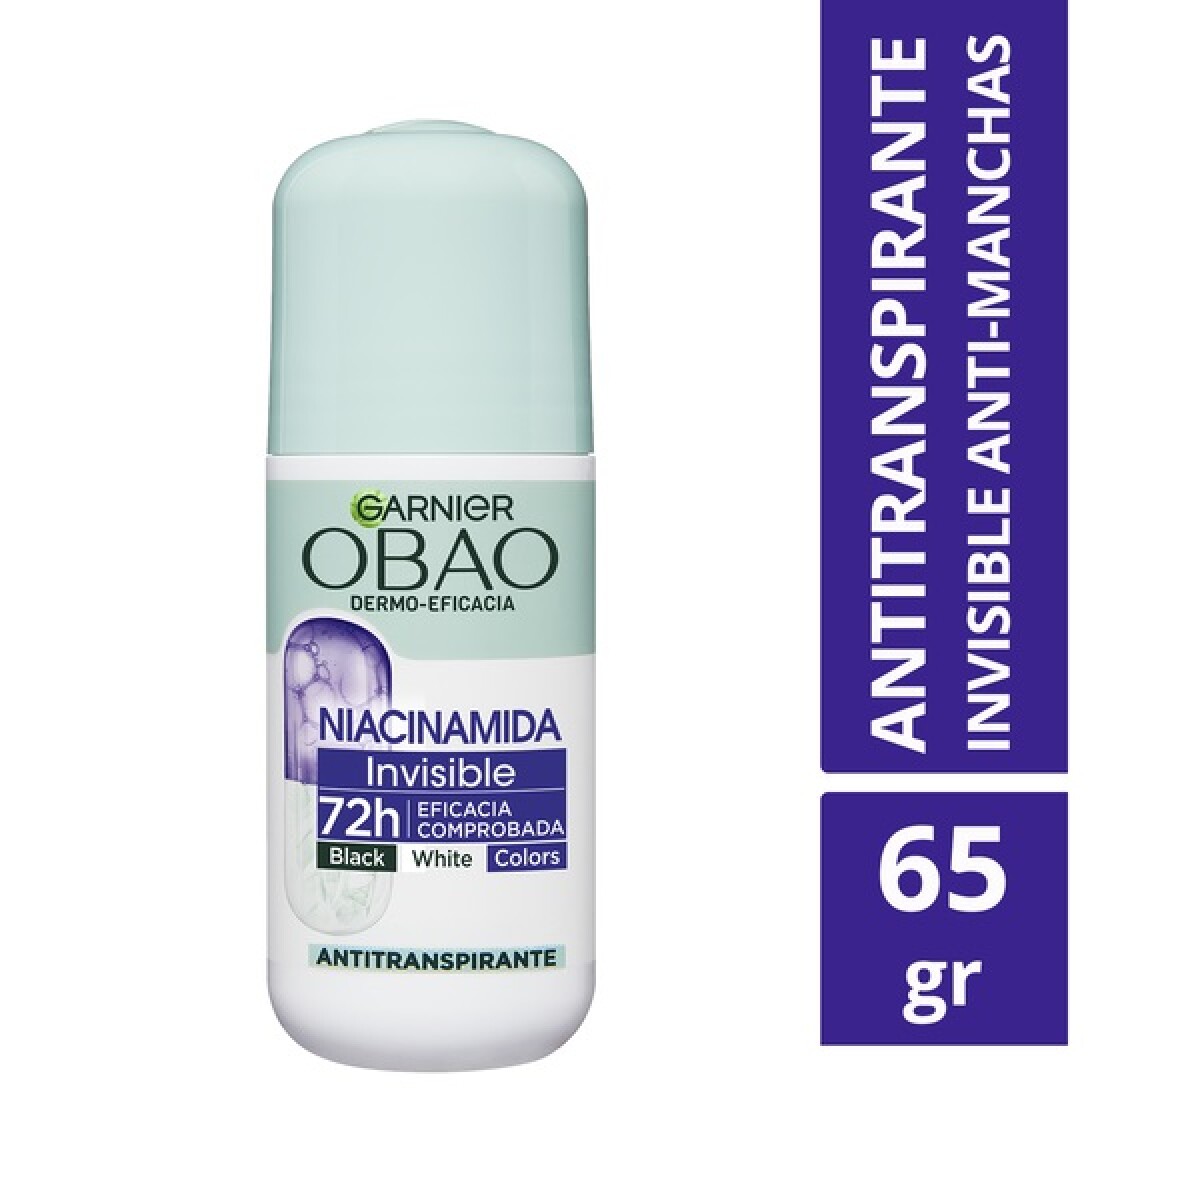 Desodorante Roll On Obao Dermo-eficacia Niacinamida 65 Grs. 